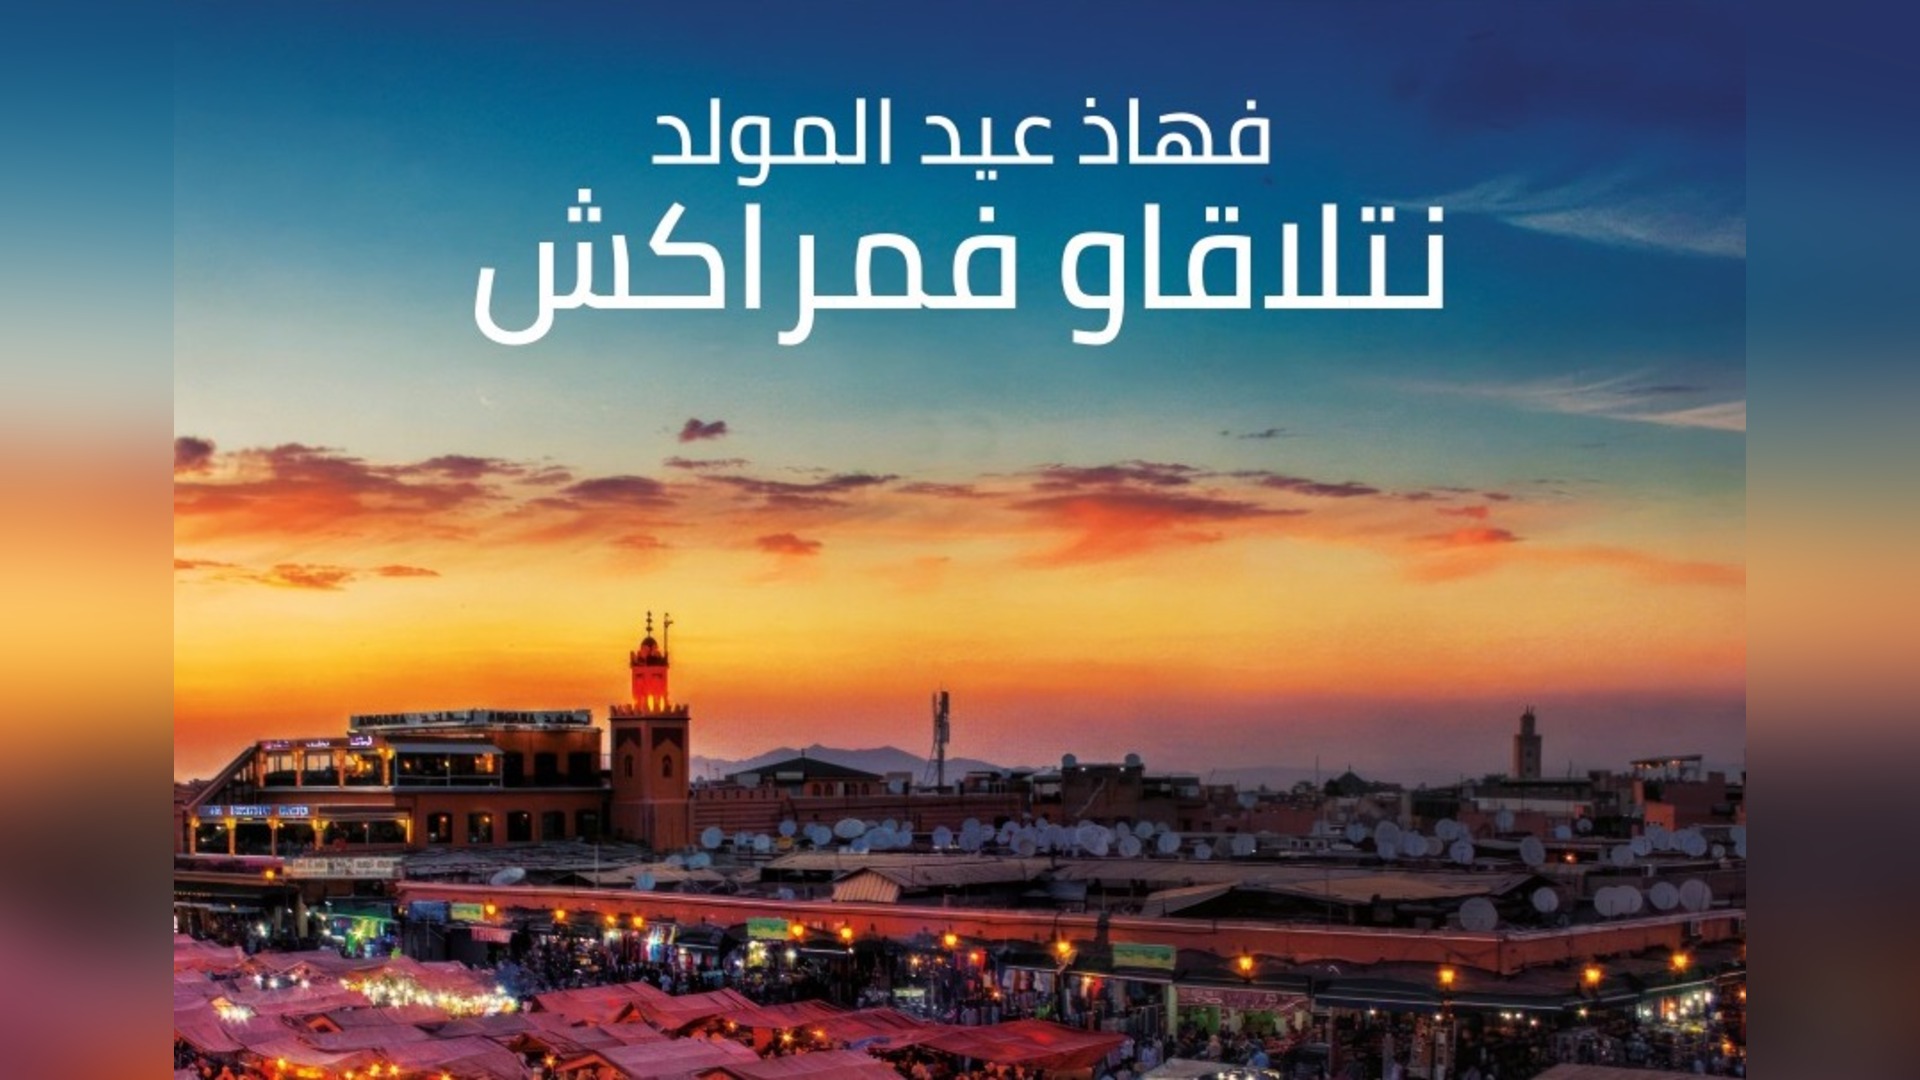 La Campagne 'Ntla9awfMarrakech' : Un Appel à la Solidarité et au Tourisme au Maroc